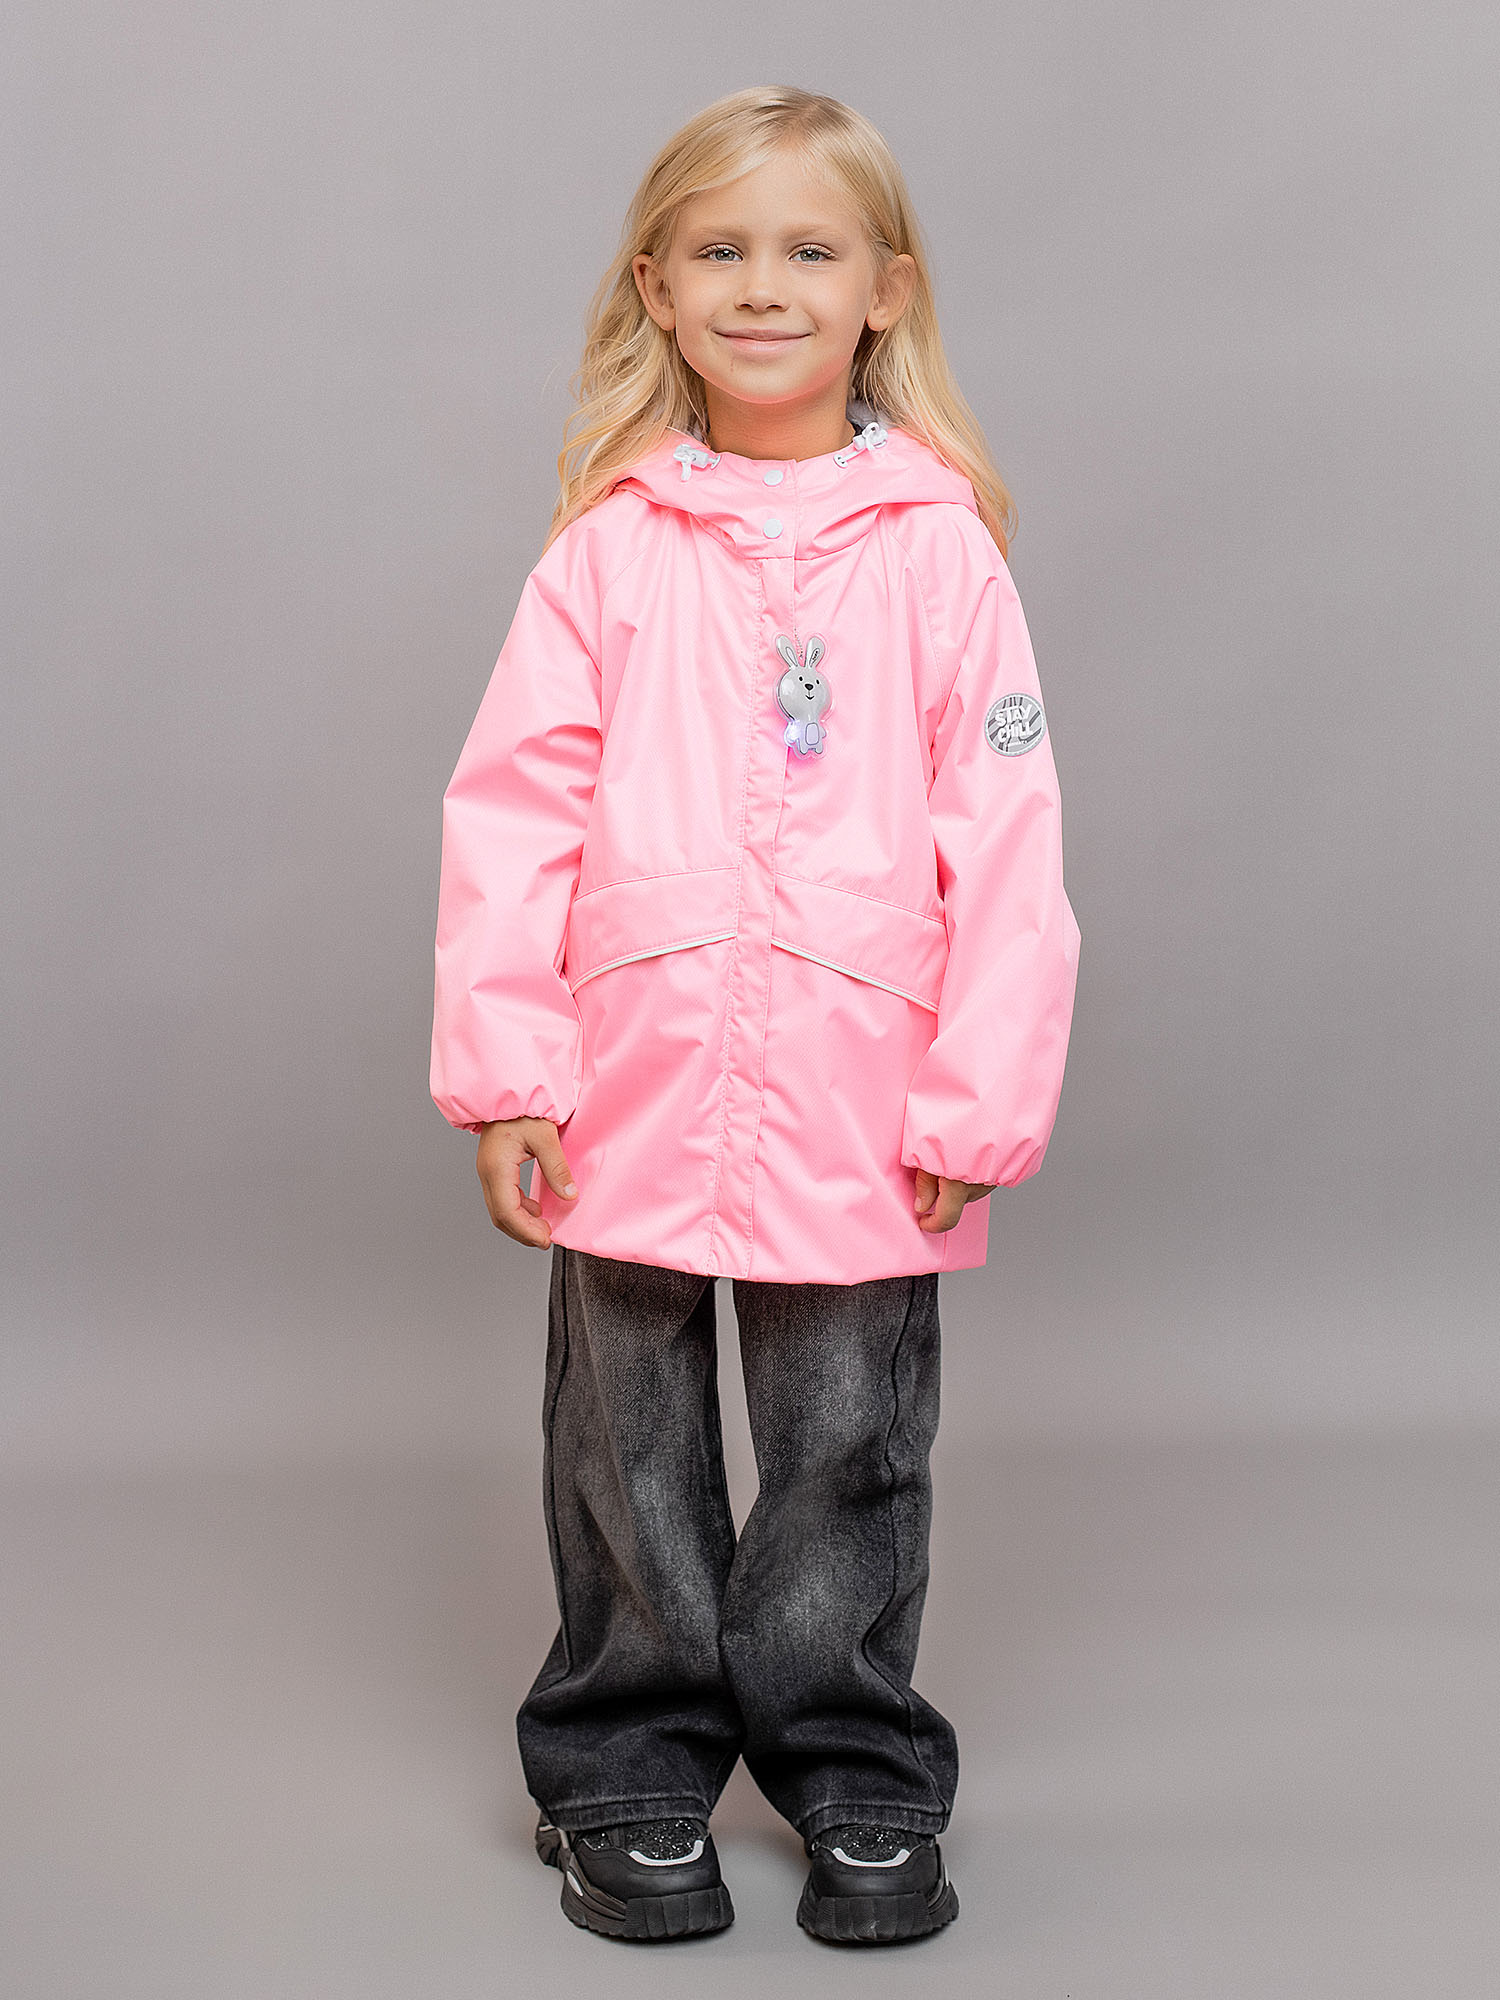 Куртка детская Batik Райя, нежно-розовый, 98